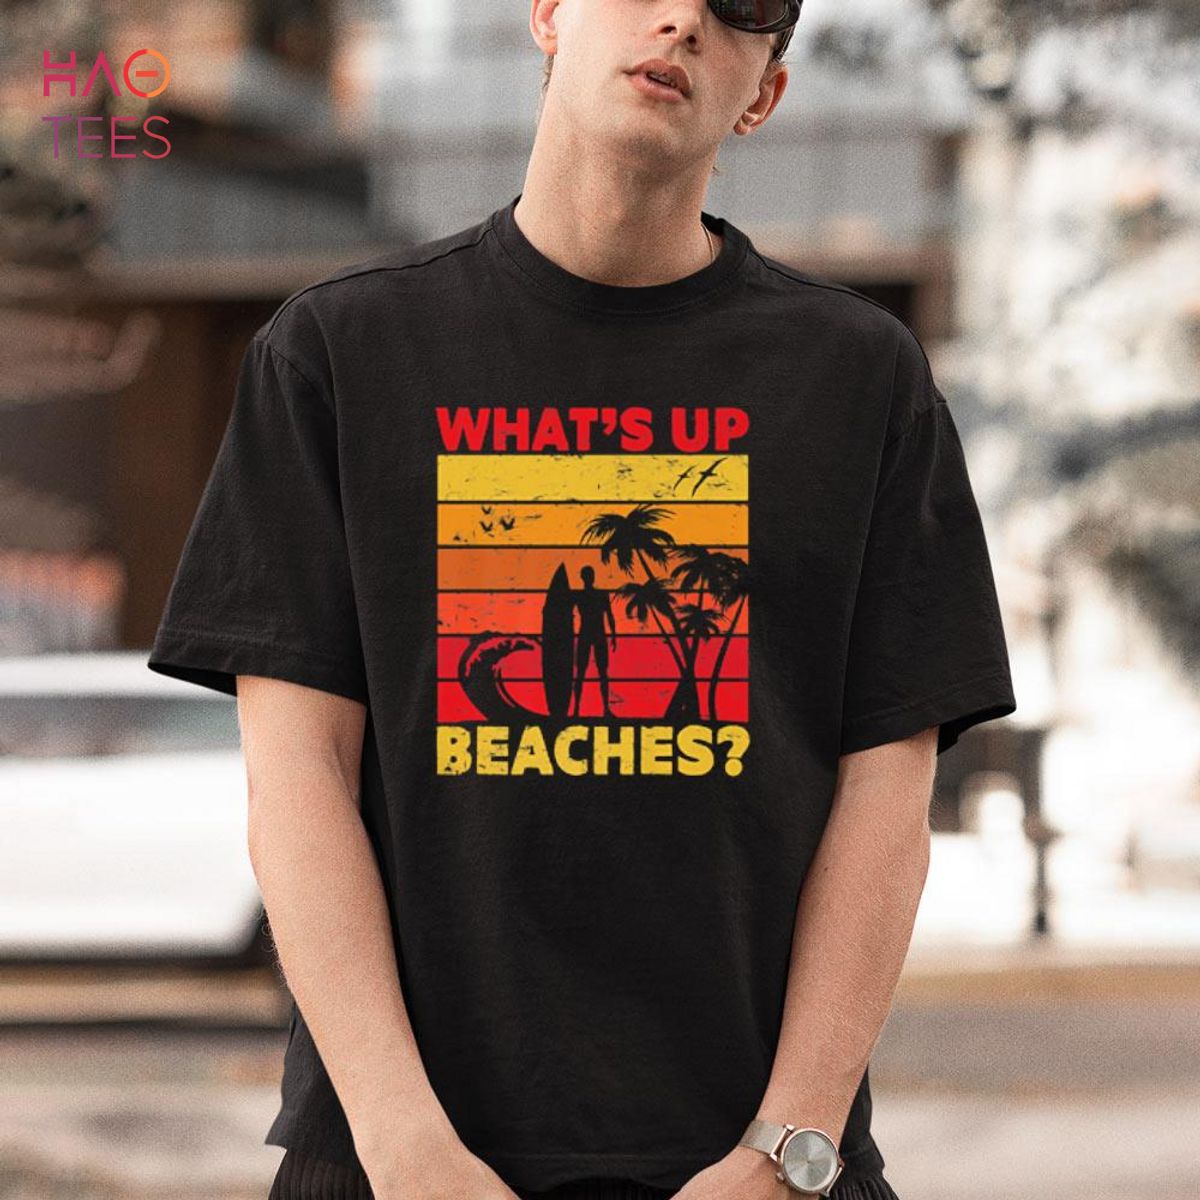 What's Up Beaches Palm Tree Sea Beach Shirt